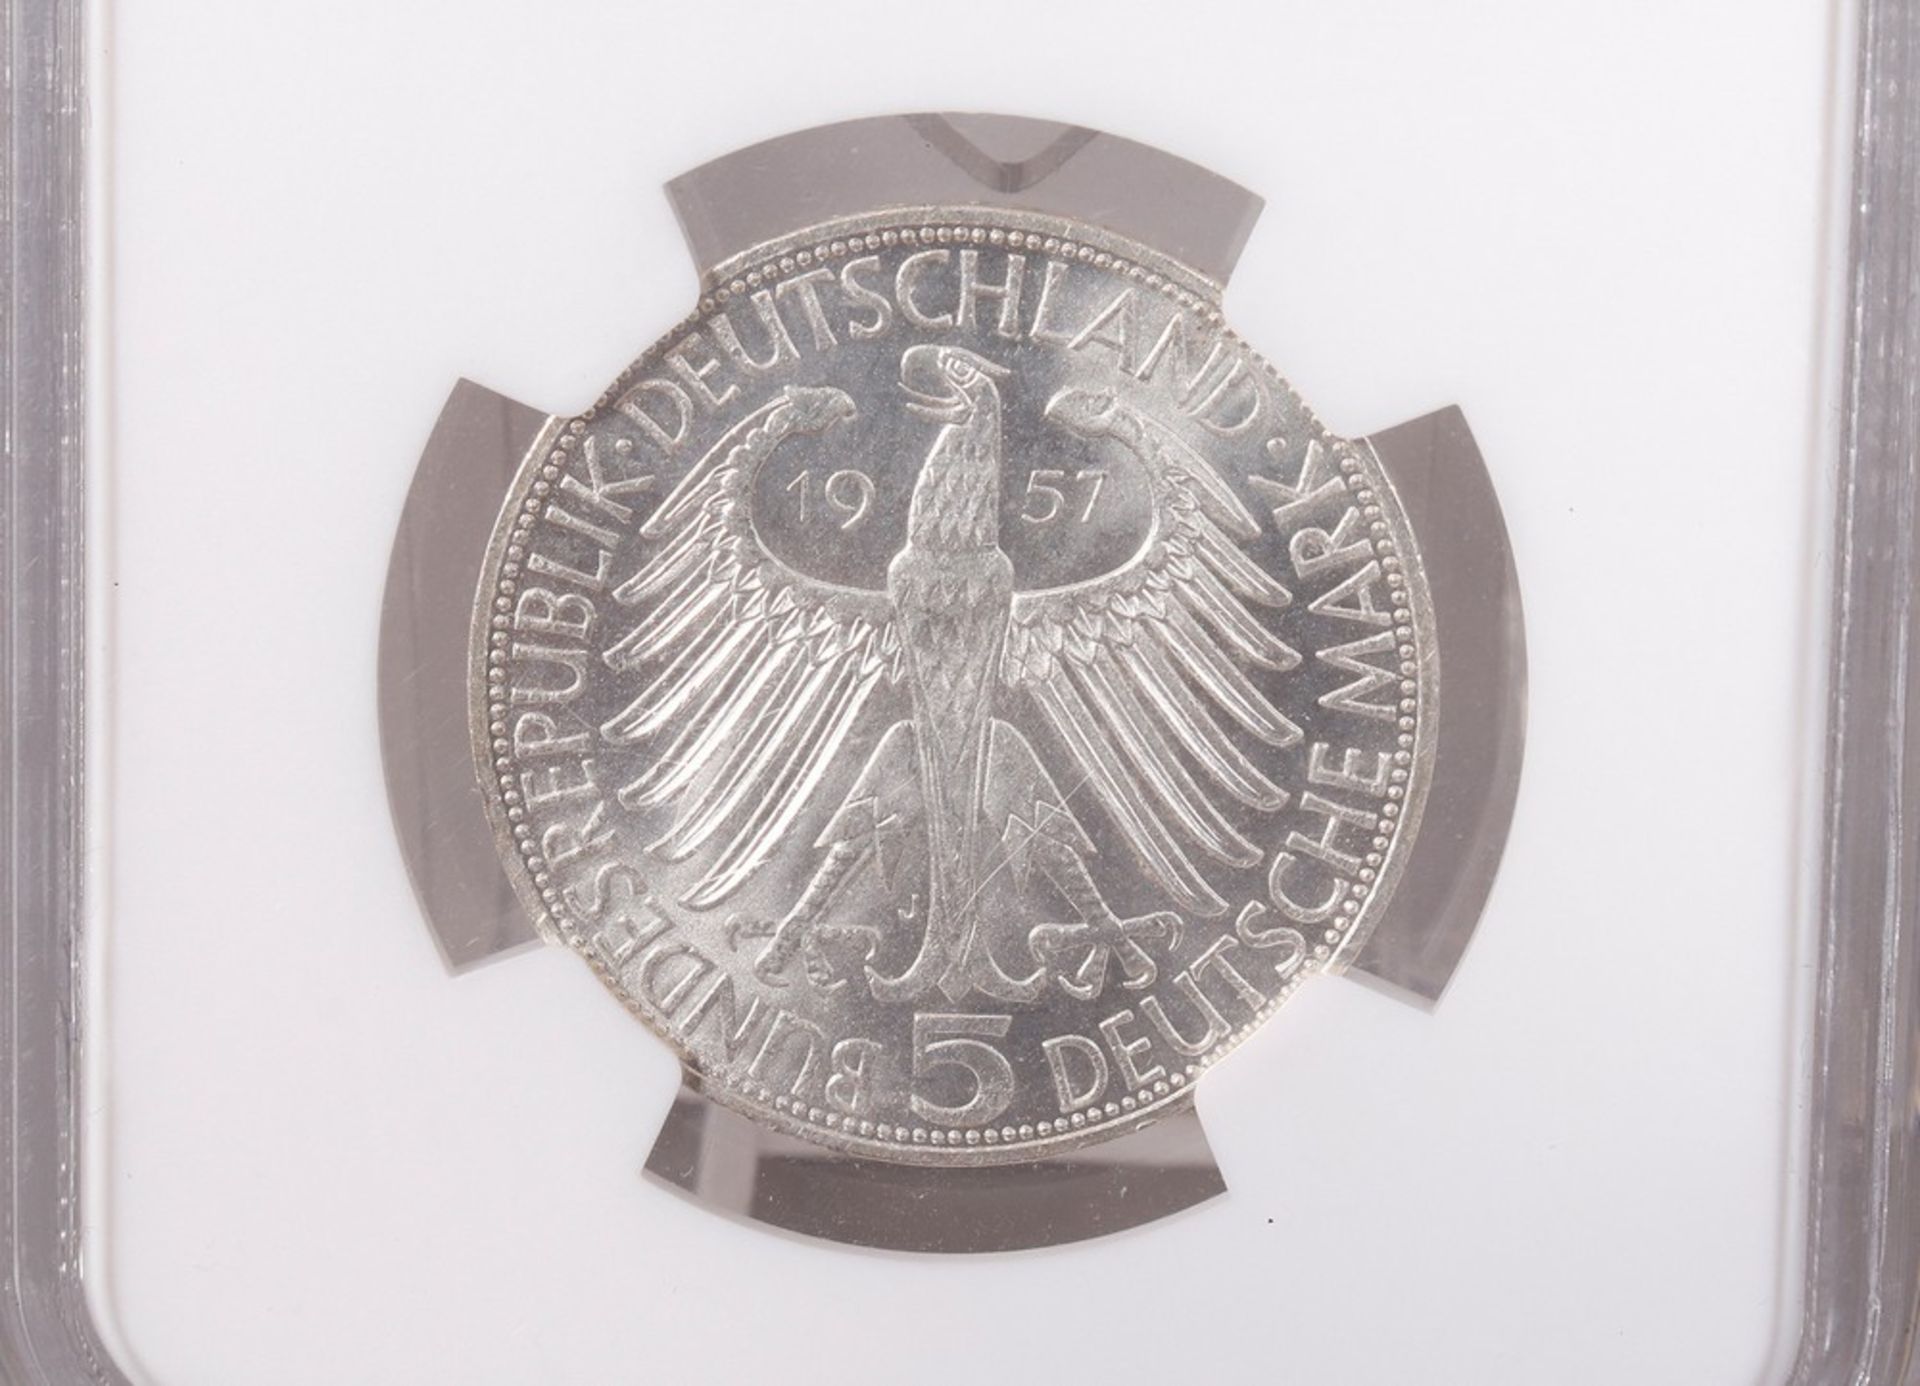 Münze, 5 DM, Joseph von Eichendorff, 1957  - Bild 4 aus 4